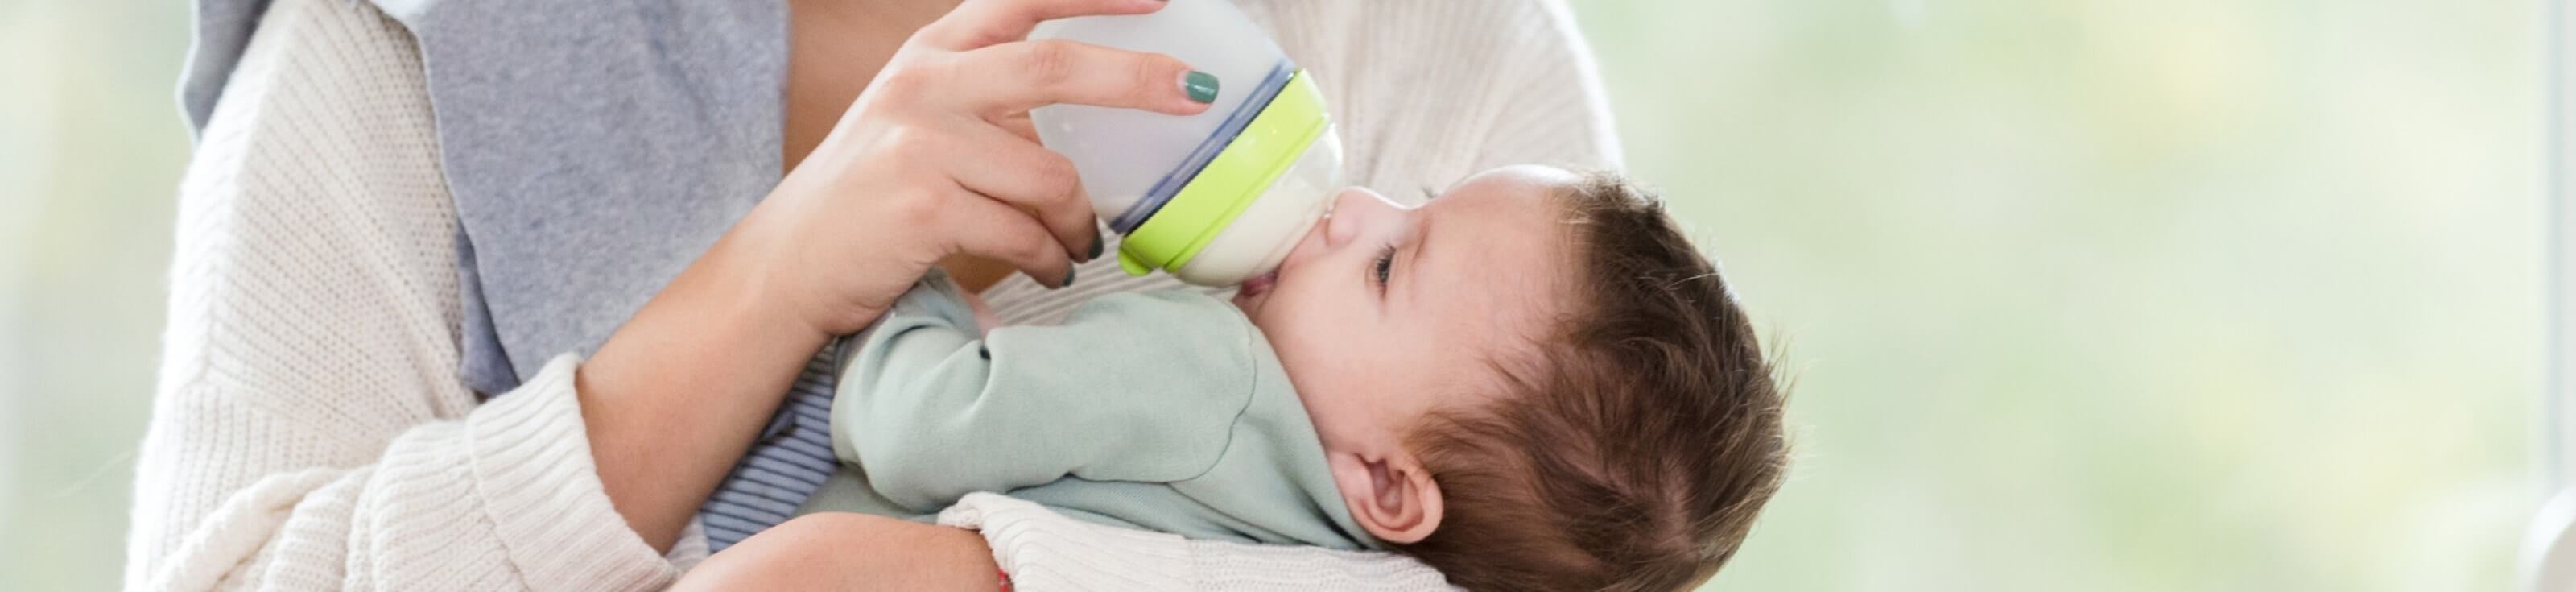 baby drinks infant formula